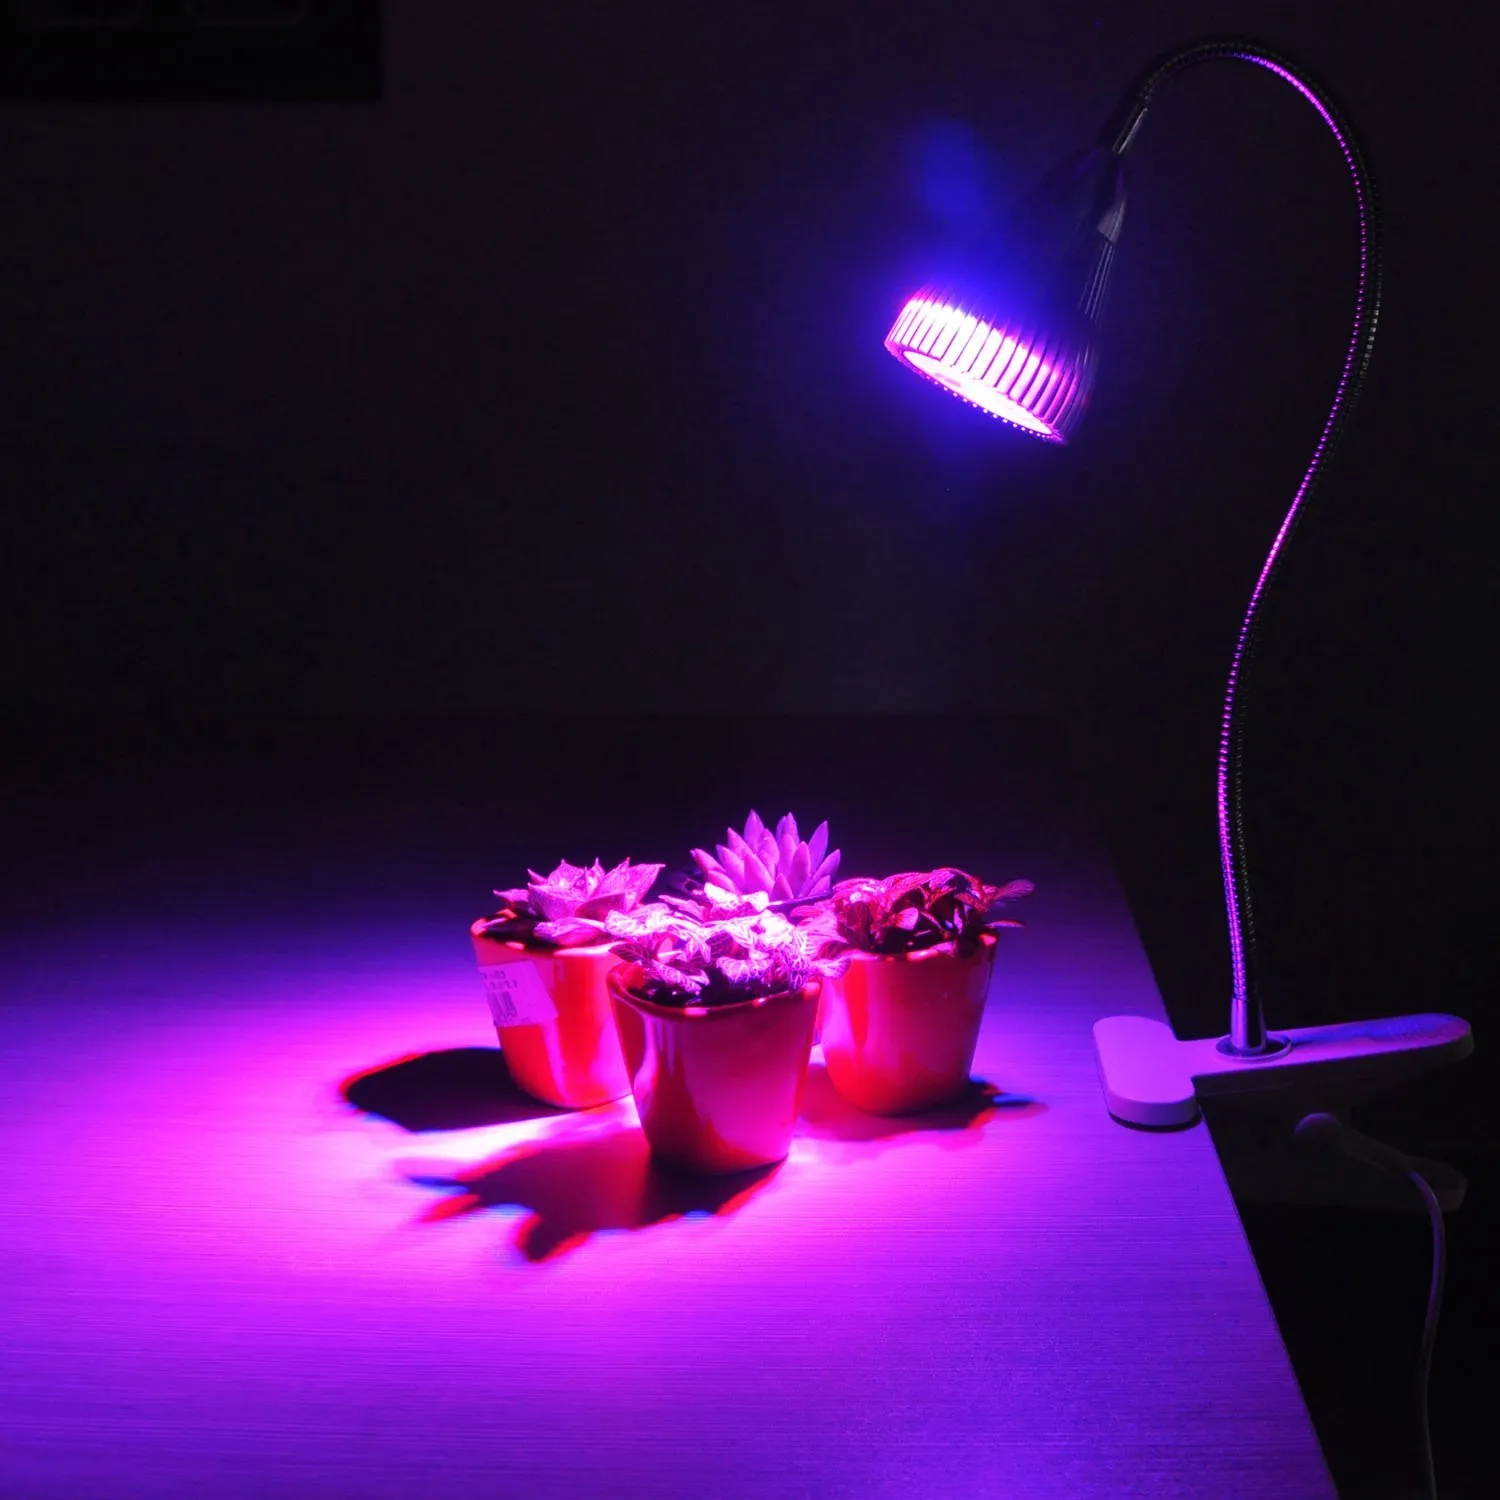 LED تنمو الأنوار 7W مصباح مكتبي كامل الطيف الكامل مع المشبك الربيع والذراع معقوفة لزراعة داخل الأماكن المائية غار